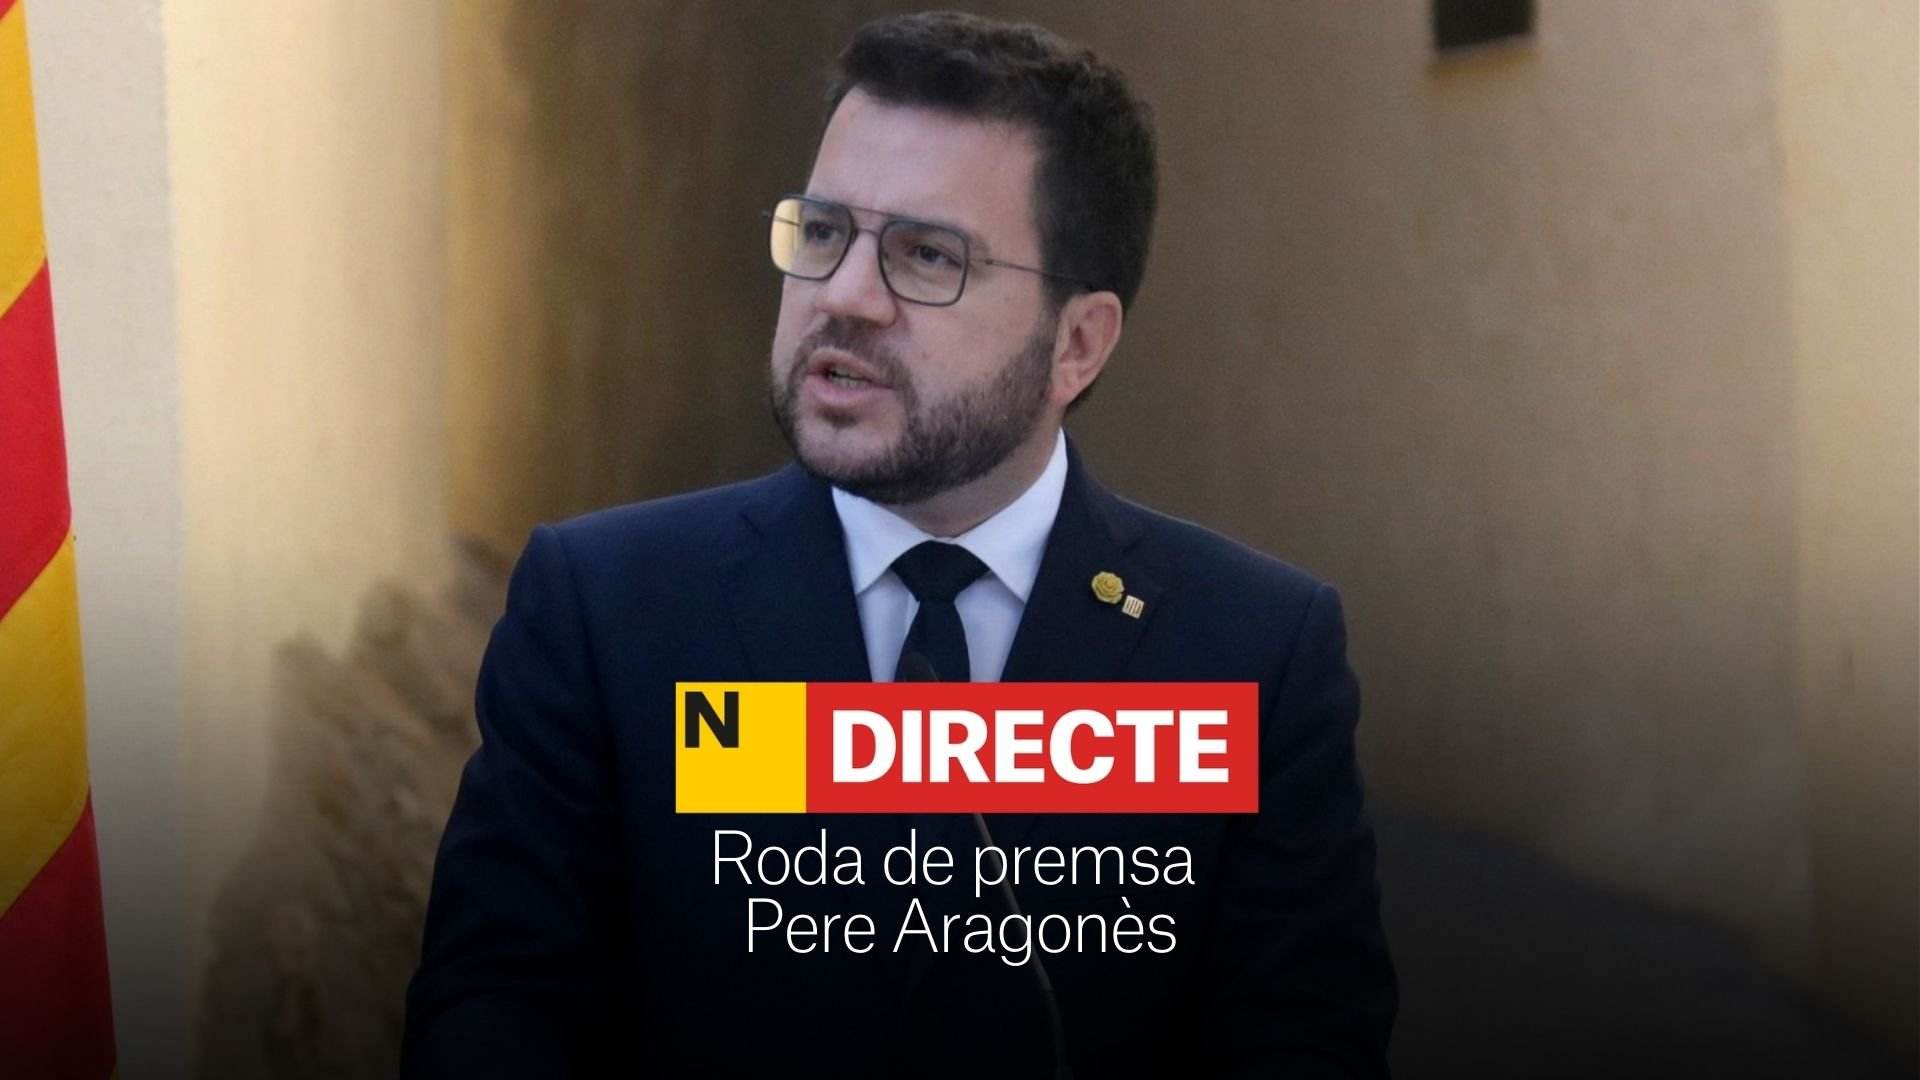 Rueda de prensa de Pere Aragonès, DIRECTO | Última hora del acuerdo de claridad